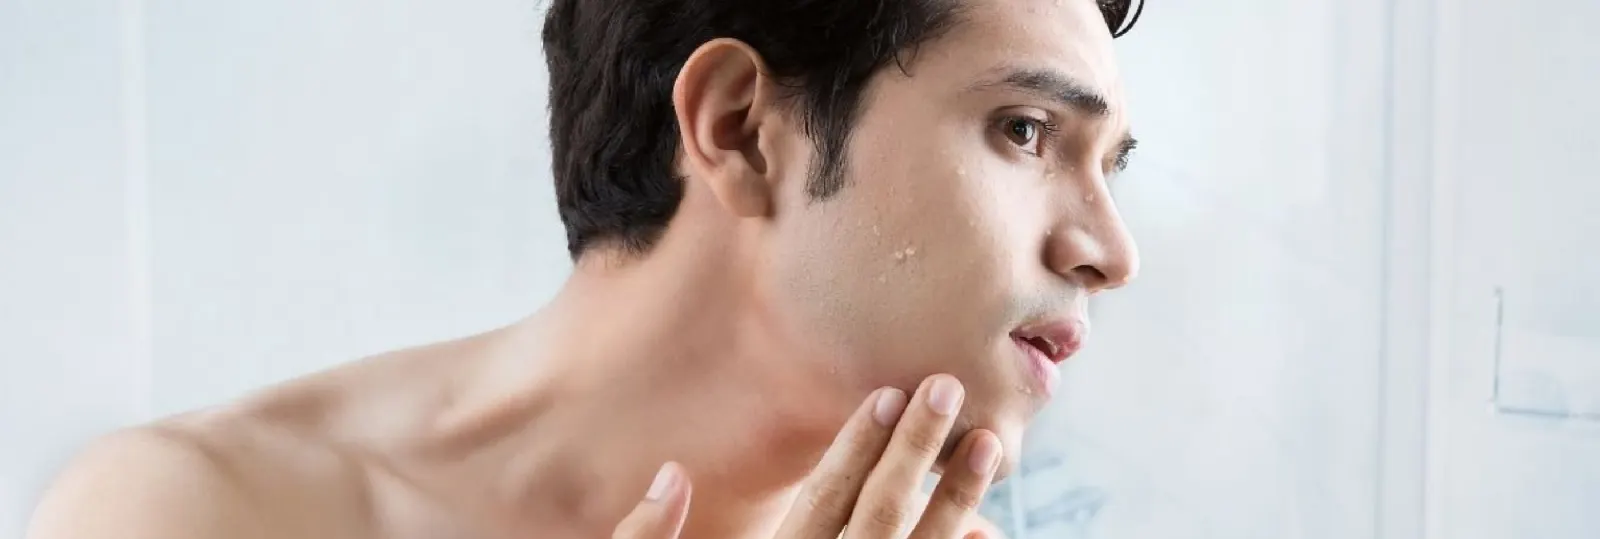 De beste huidverzorgingsroutine voor mannen 